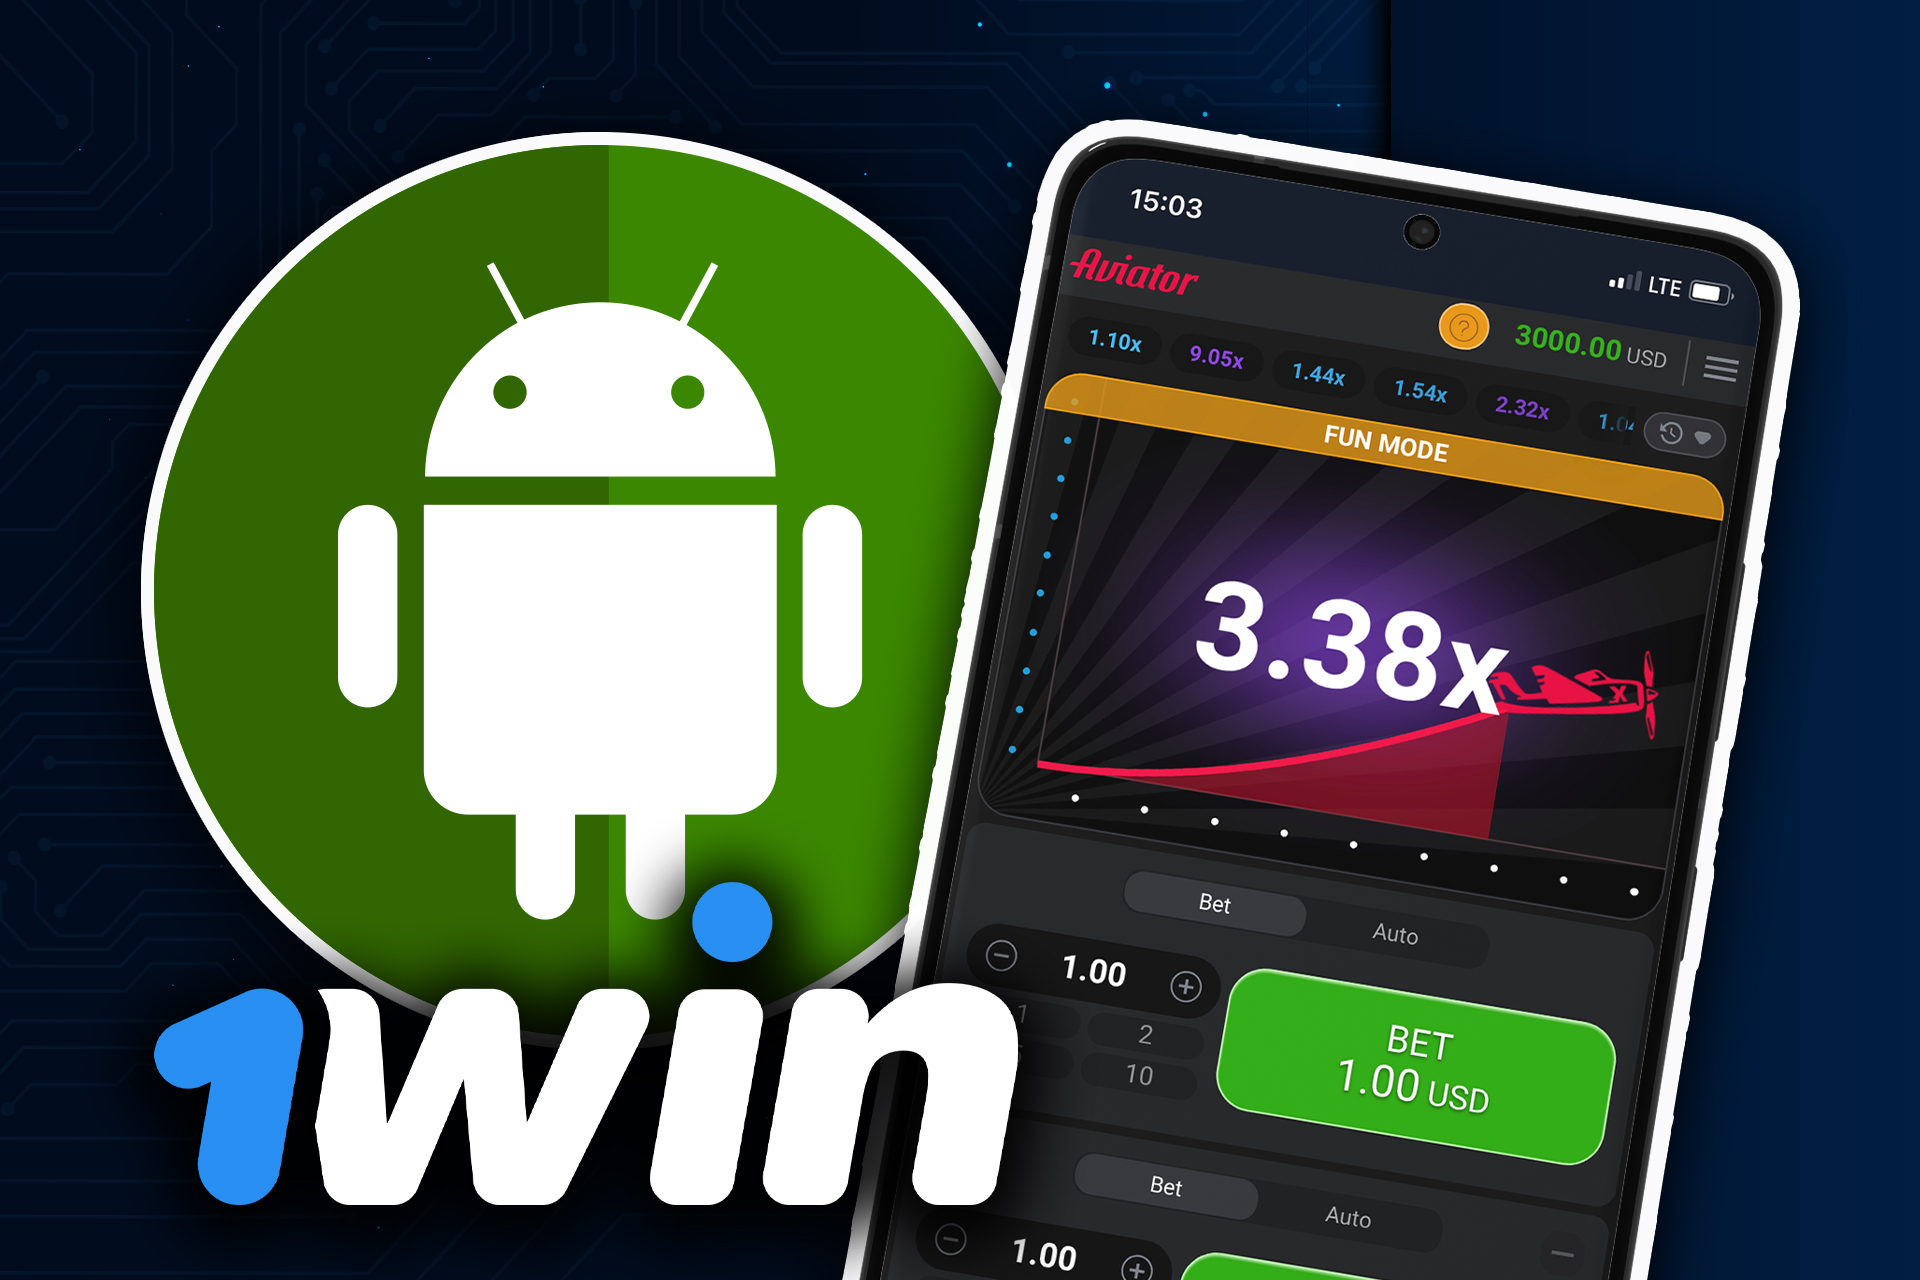 Descarga la aplicación 1win en tu Android para jugar a Aviator en el smartphone.